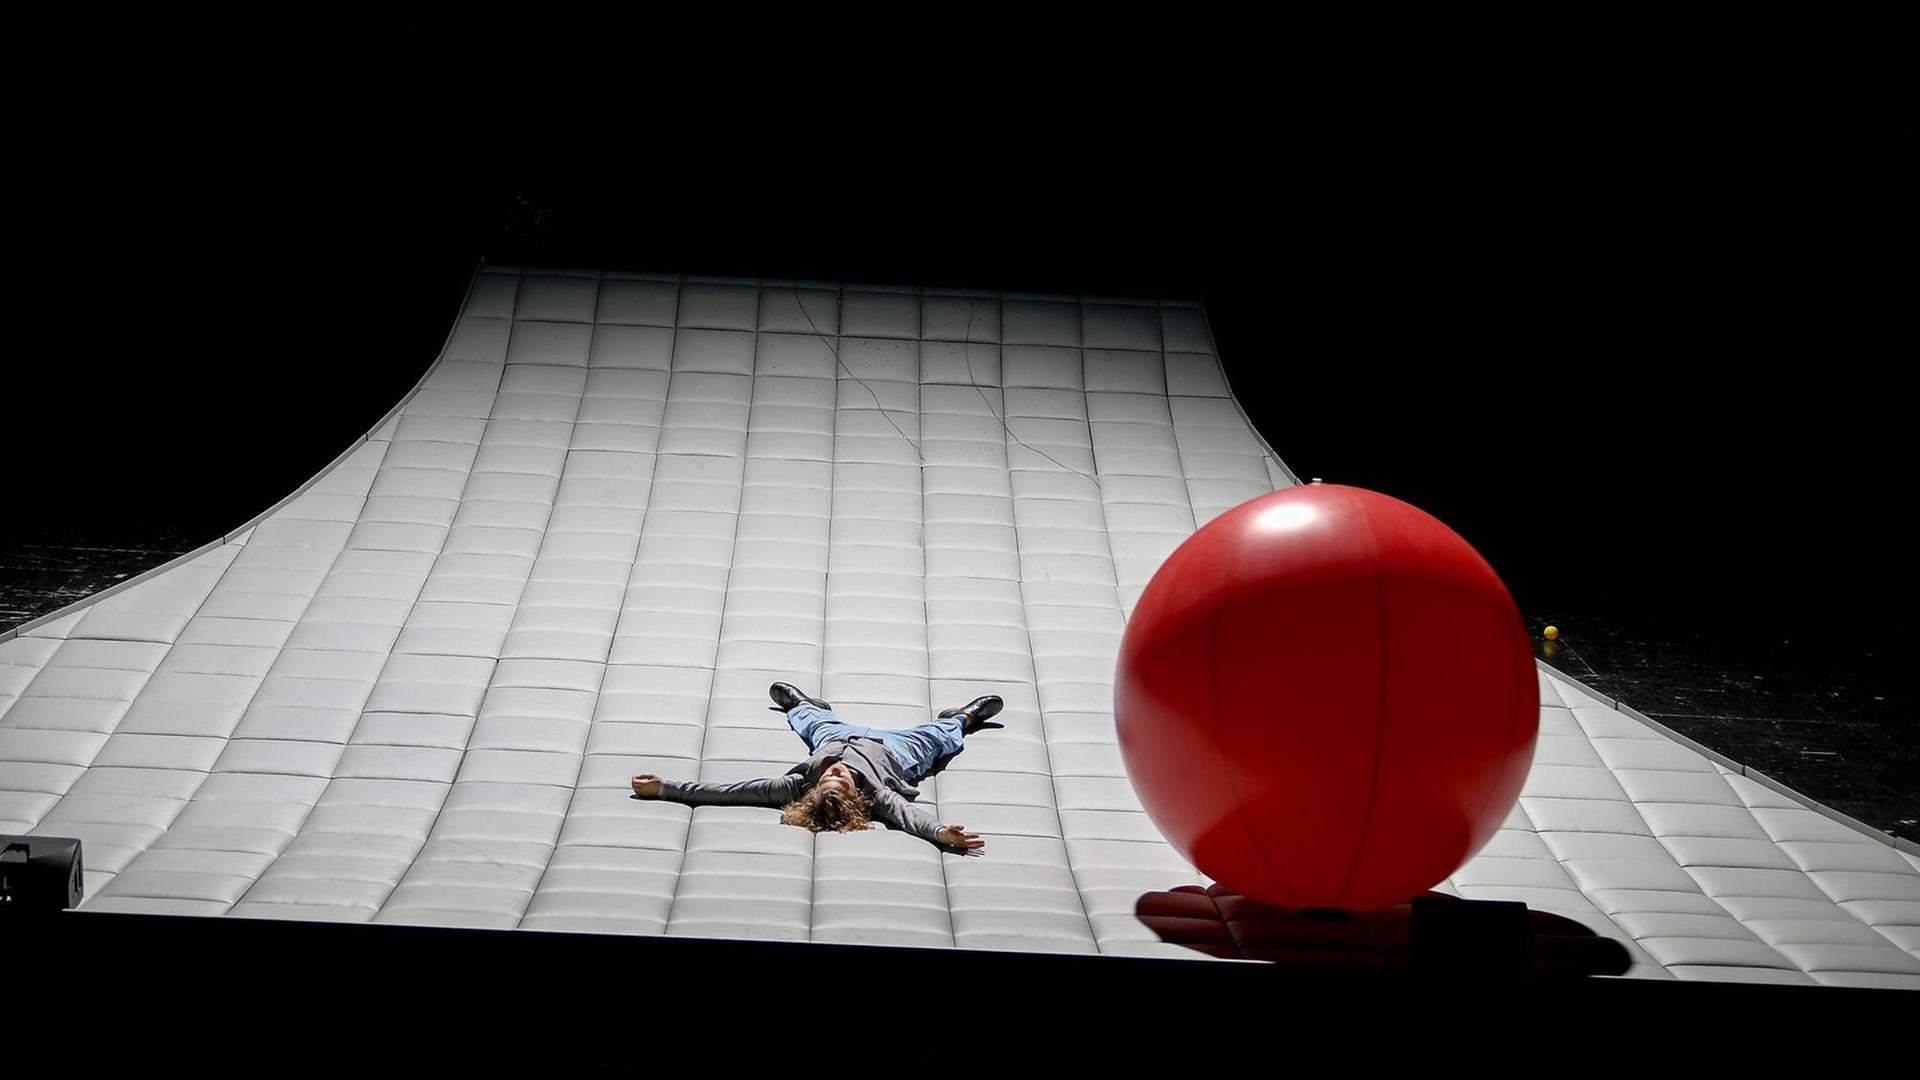 Der Schauspieler Moritz Kienemann liegt ausgestreckt auf einer riesigen Matratze, rechts neben ihm ein großer, roter Ball.